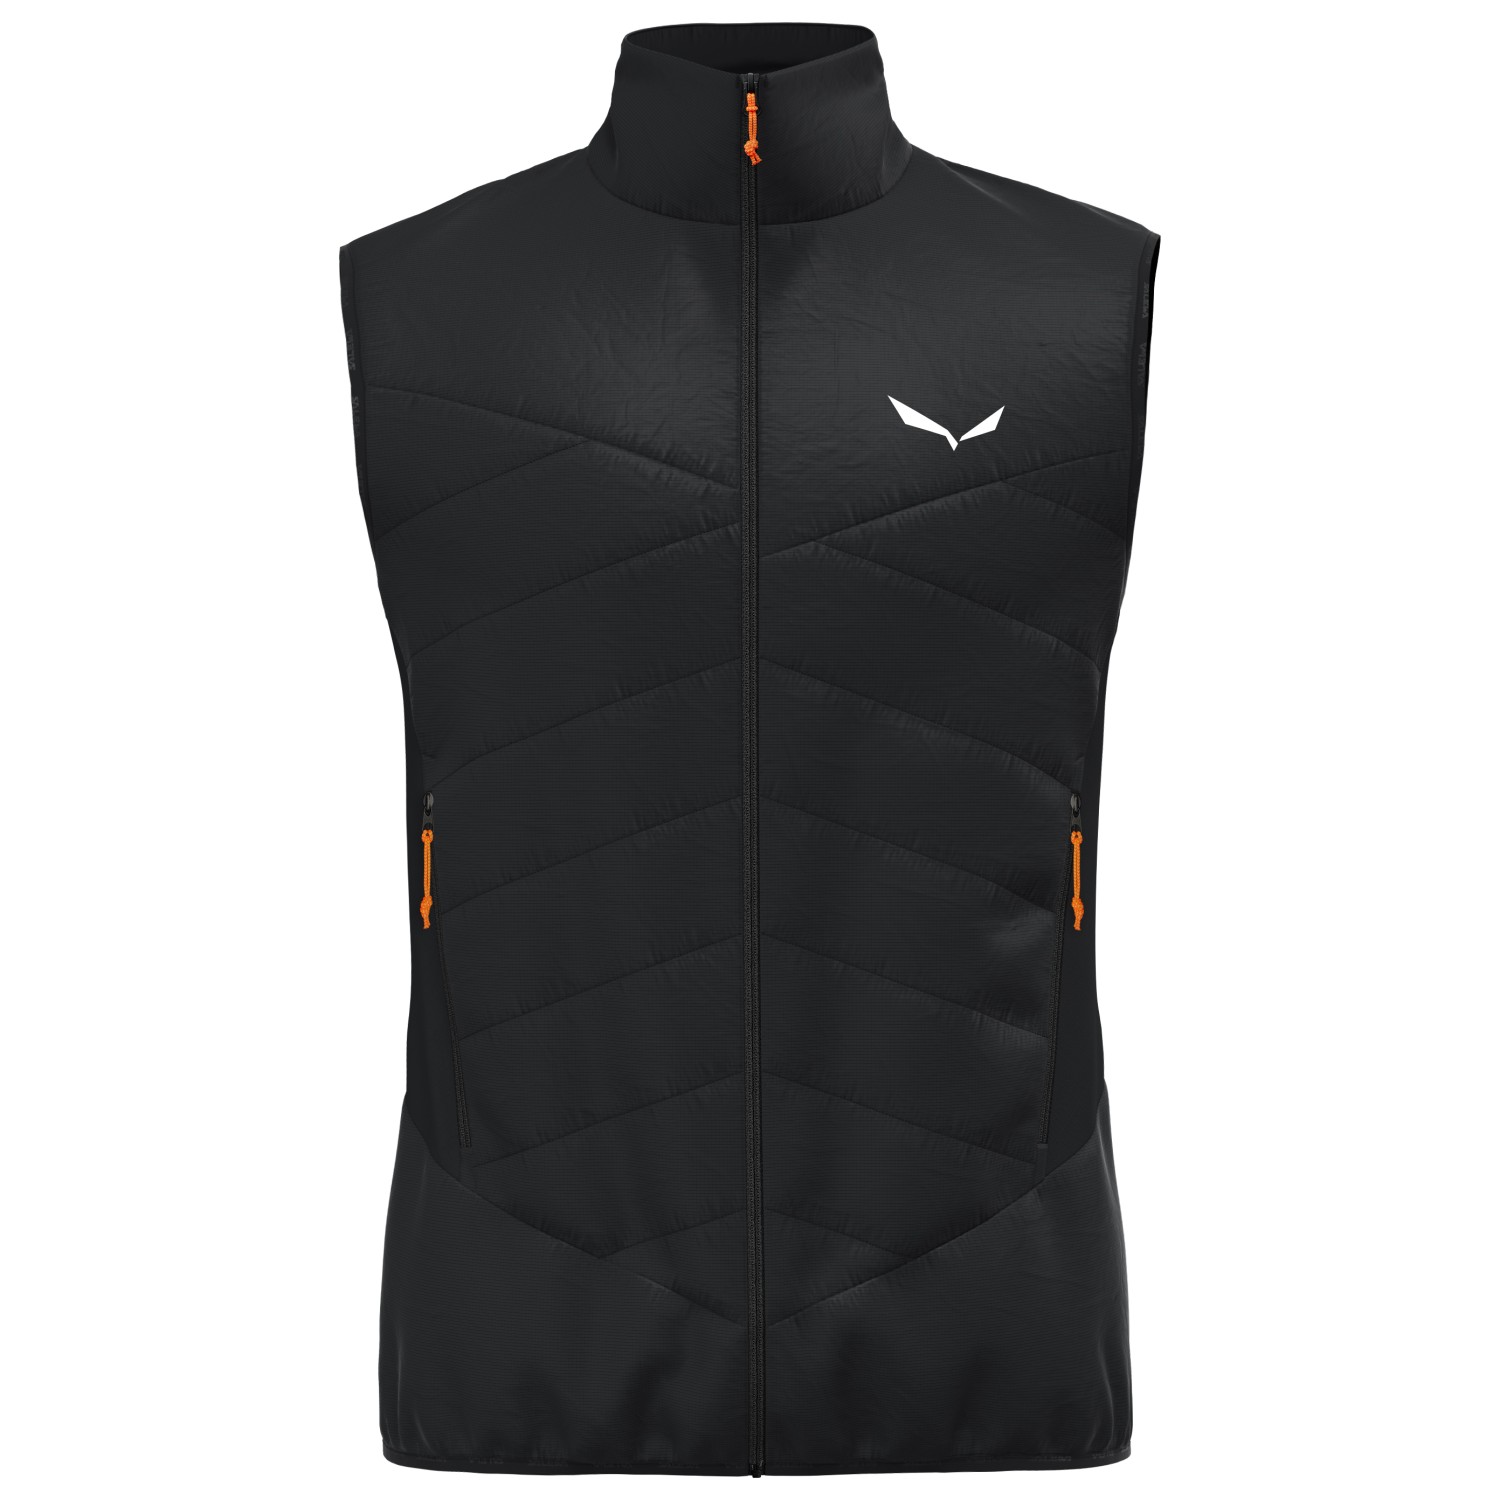 Шерстяной жилет Salewa Ortles Hybrid TWR Vest, цвет Black Out жилет cropped puffer vest cotton on body цвет black